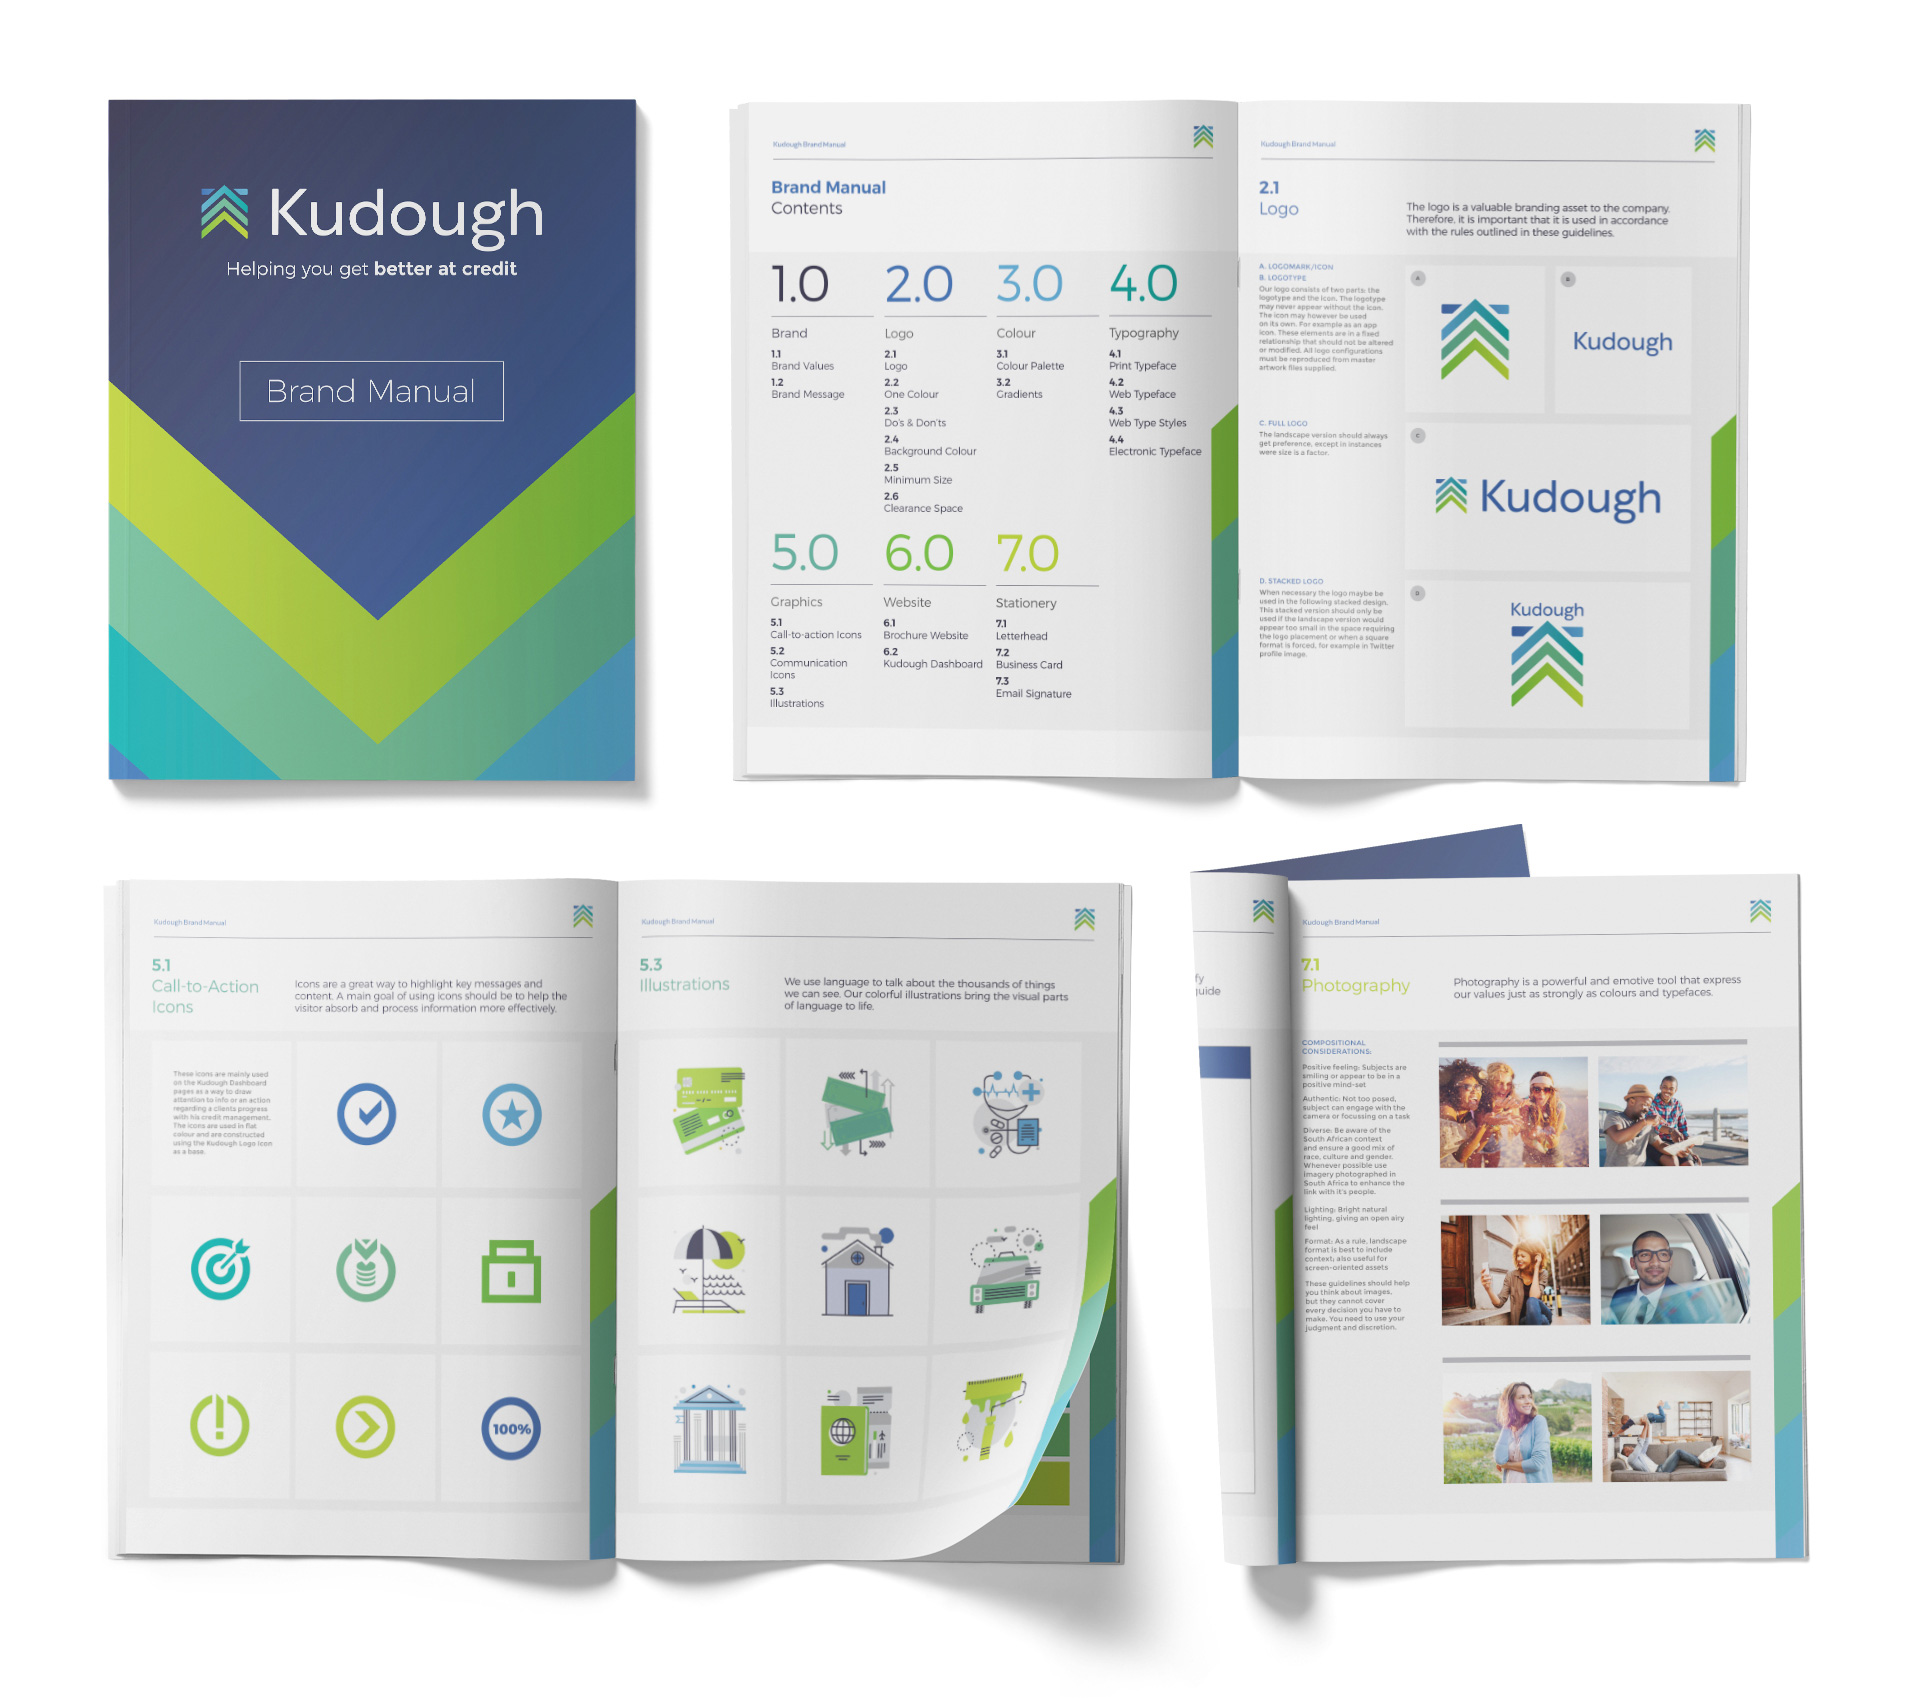 Kudough brand manual design